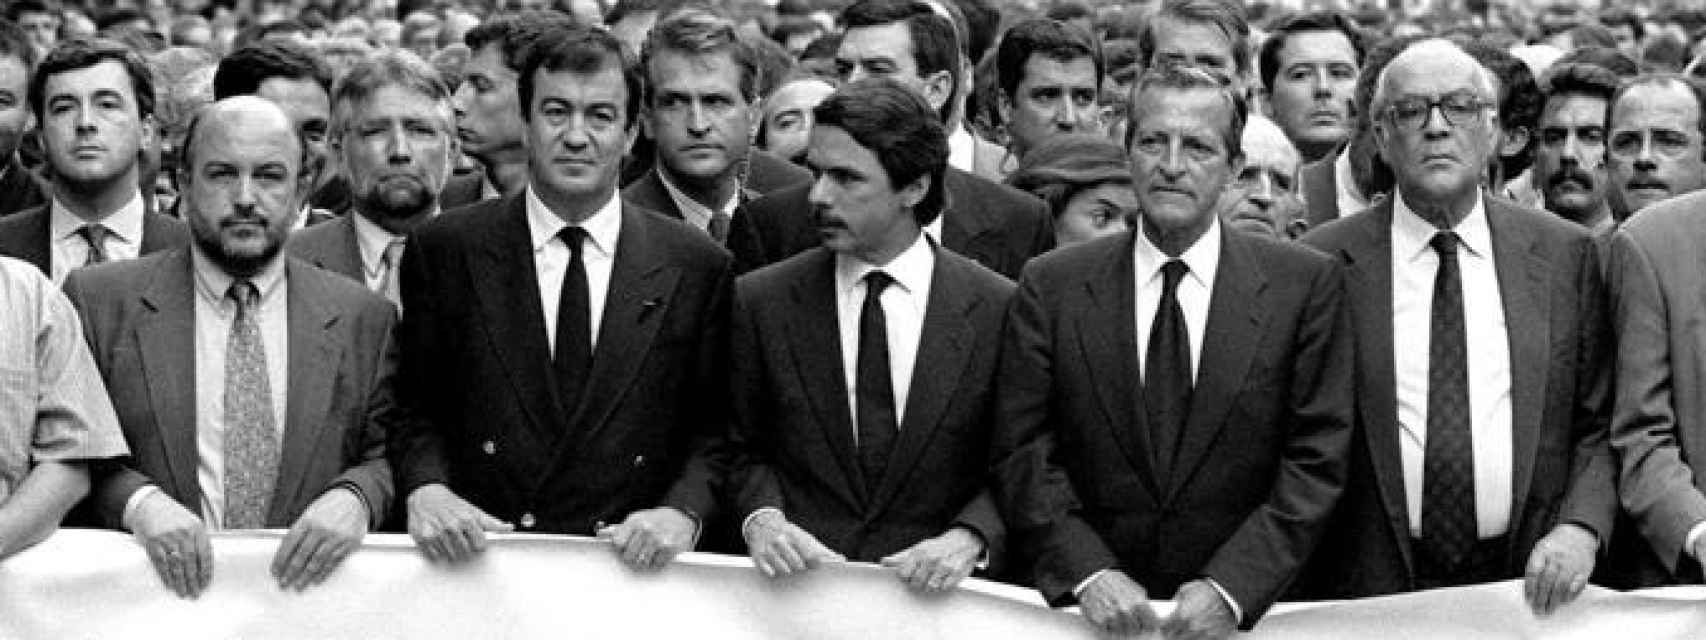 Joaquín Almunia, Álvarez-Cascos, José María Aznar, Adolfo Suárez y Leopoldo Calvo Sotelo en la manifestación tras el asesinato de Pedro Antonio Blanco.